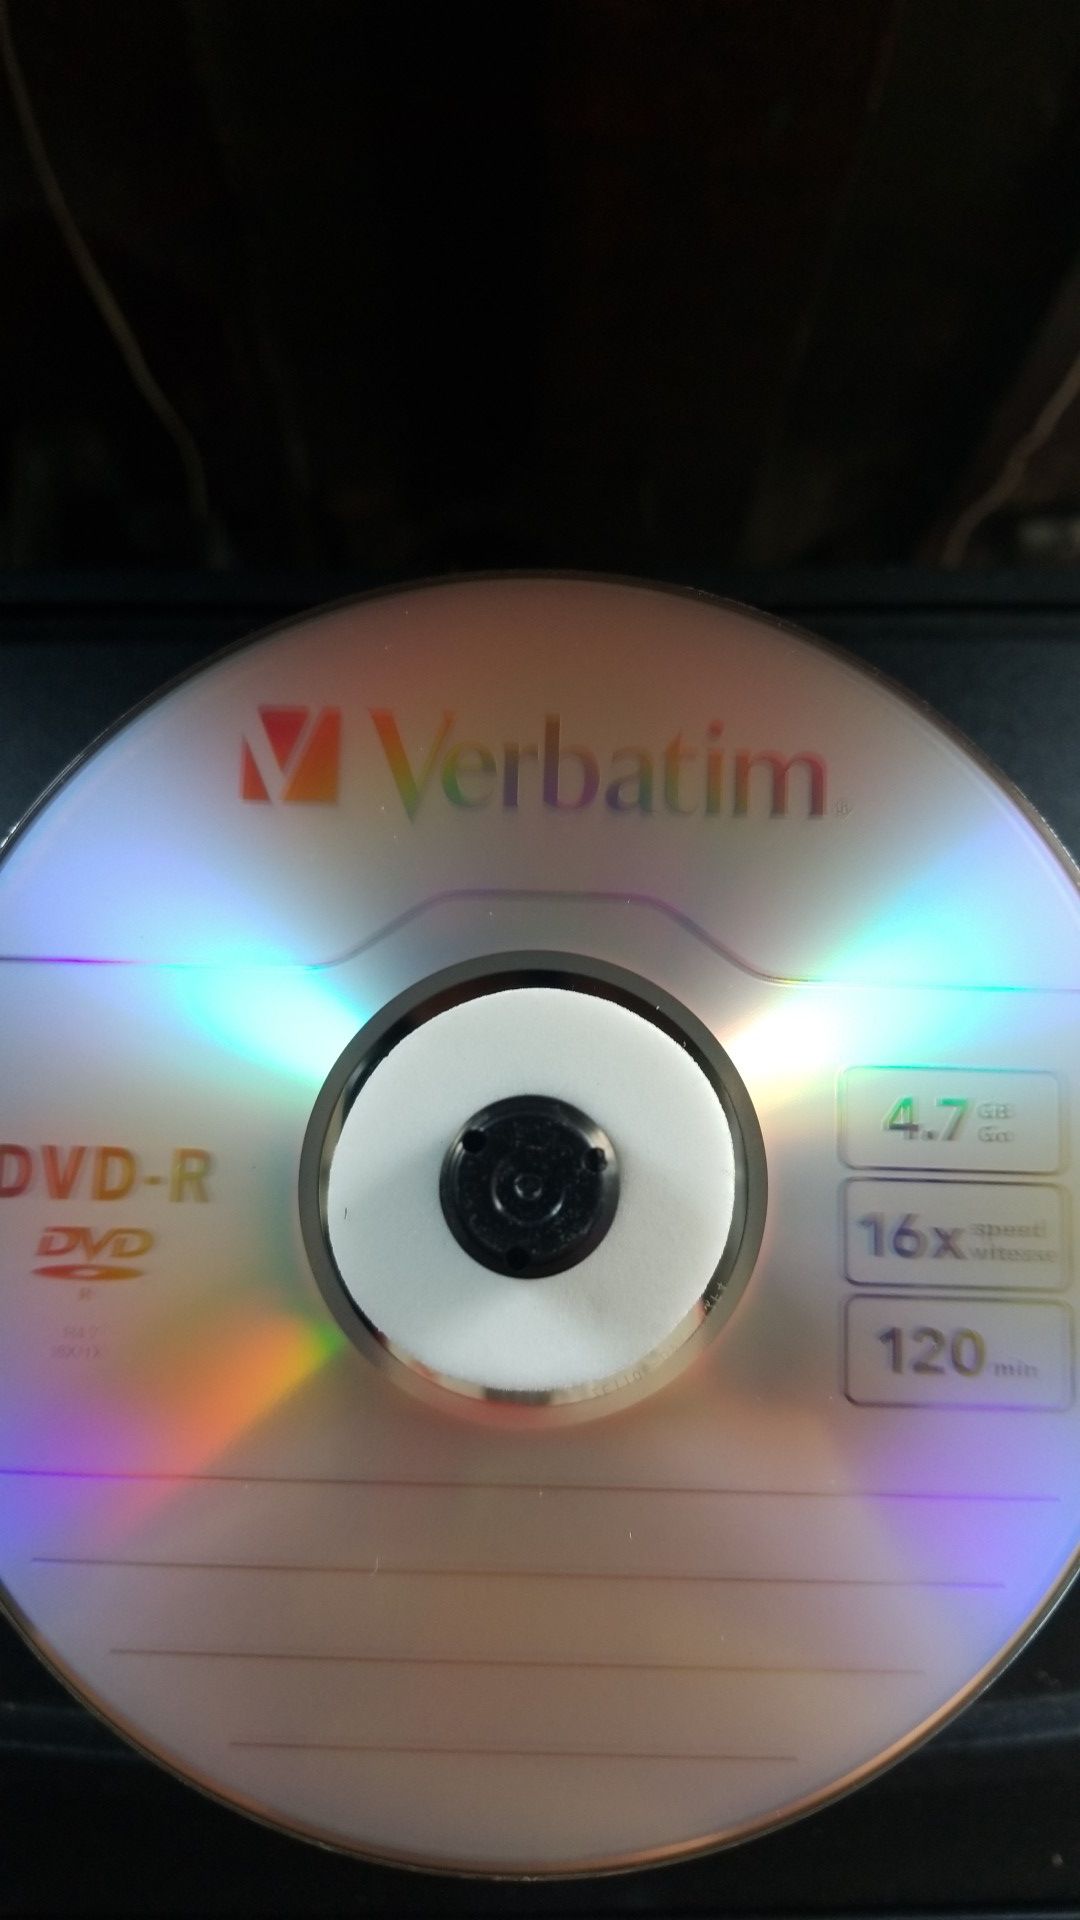 VERBATIM DVD -R 4 7 16X 120 MIN